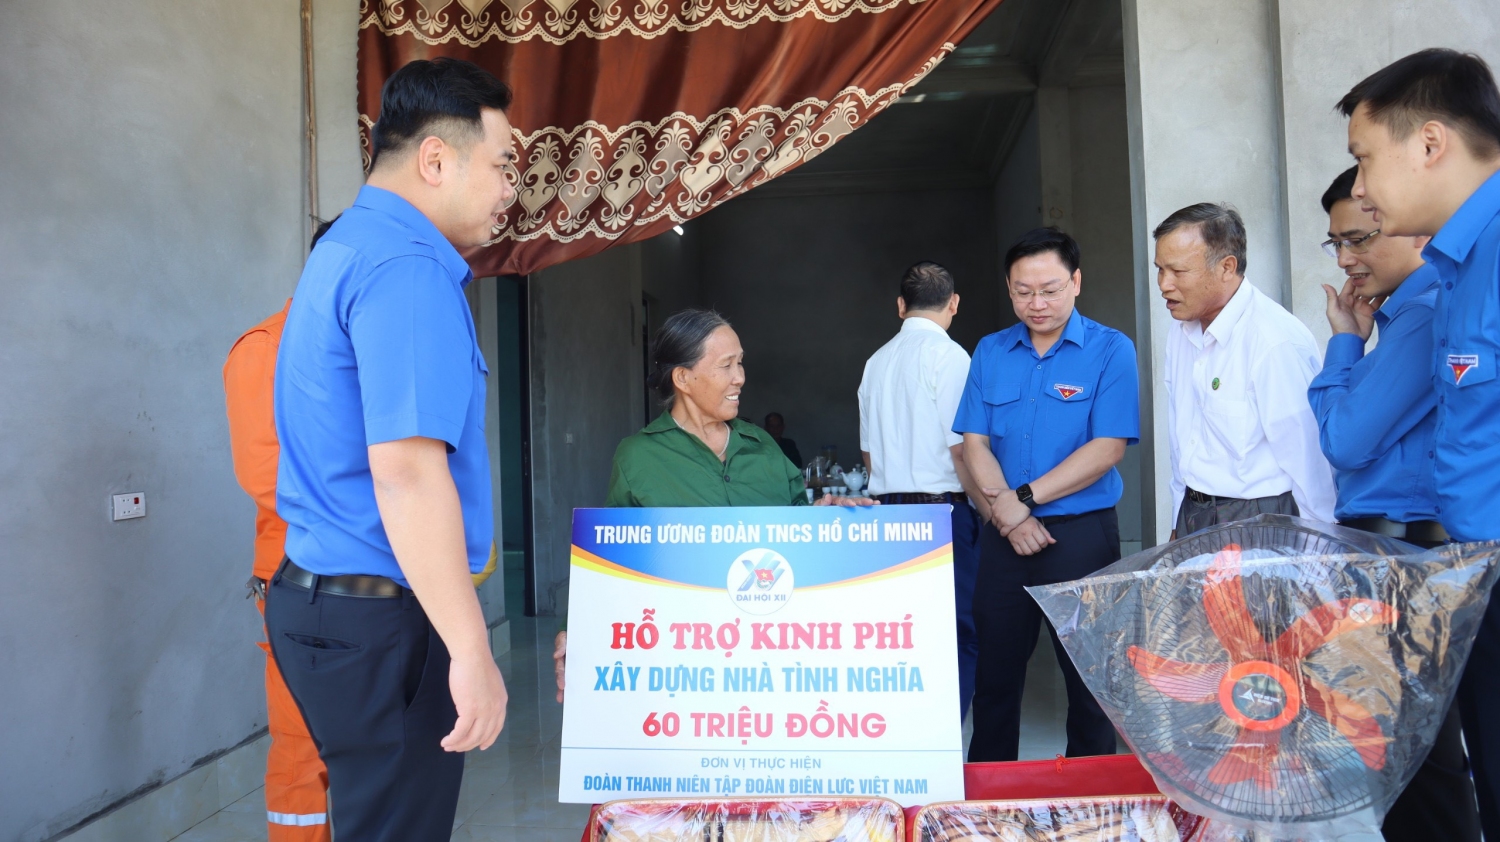 Đoàn công tác Trung ương Đoàn, Đoàn Thanh niên Tập đoàn Điện lực Việt Nam trao tặng kinh phí hỗ trợ xây dựng nhà tình nghĩa cho gia đình bà Dương Thị C